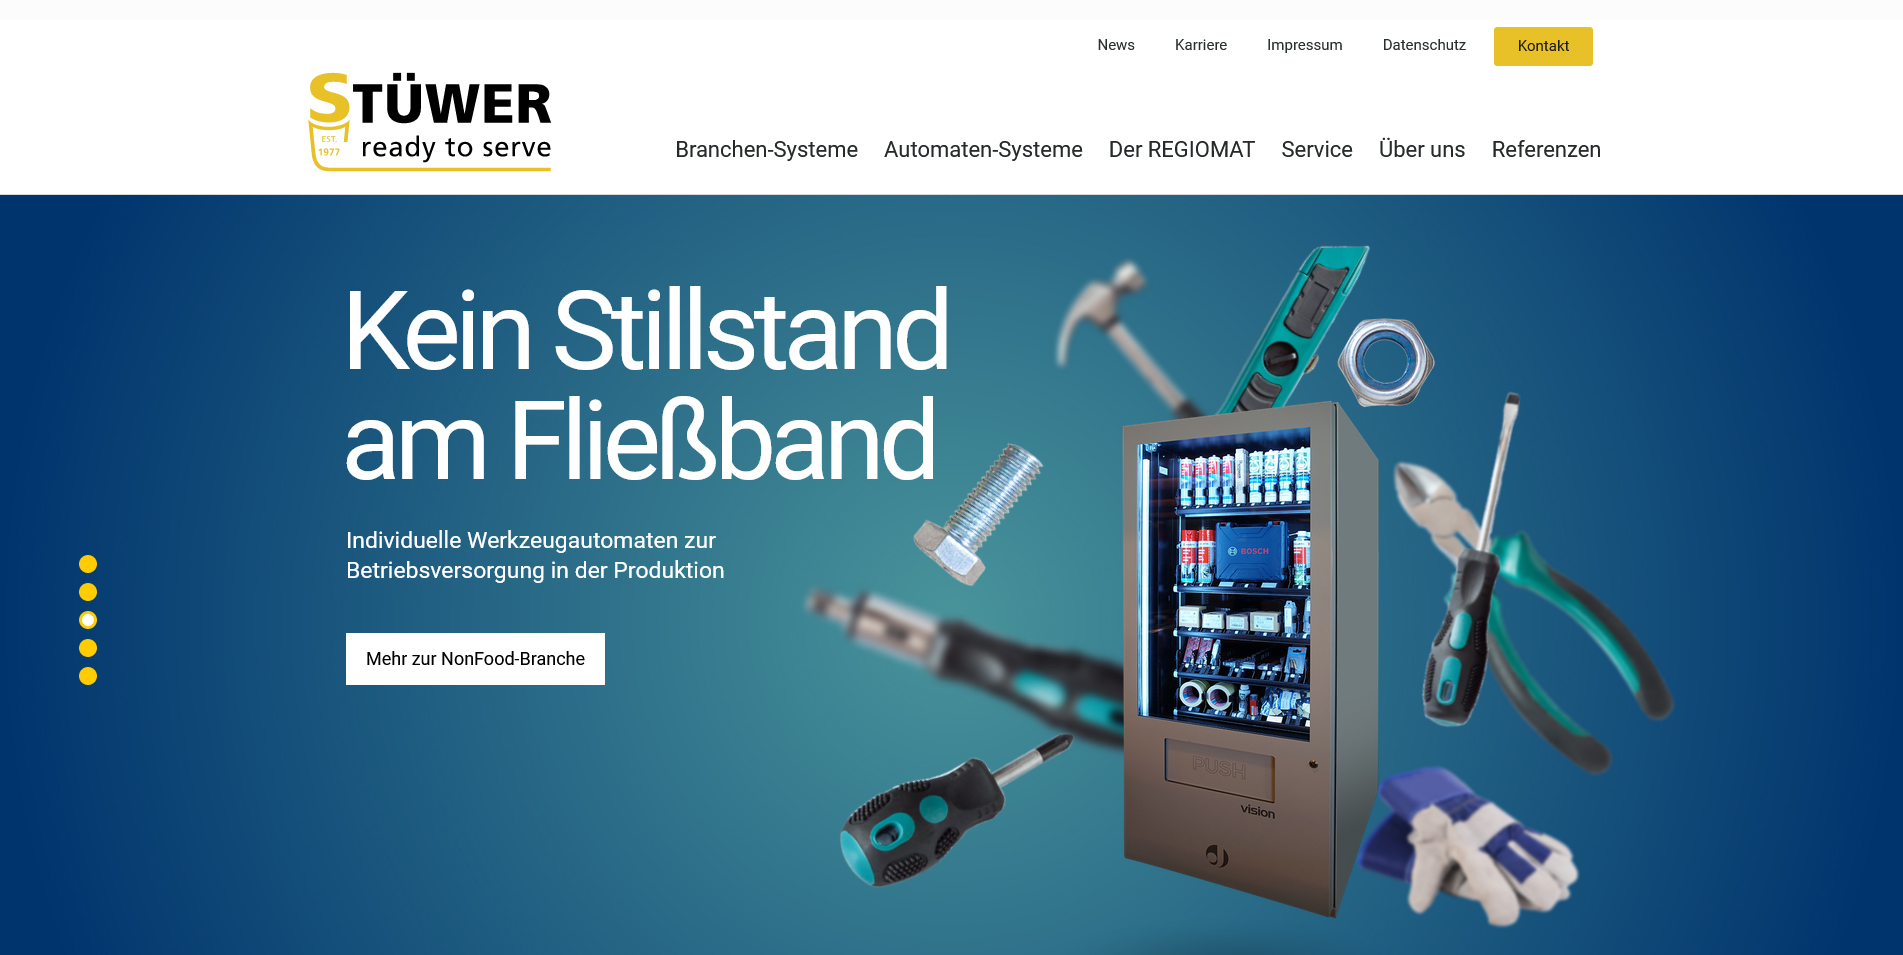 Das Unternehmen Stüwer präsentiert seine Automatenkonzepte auf einer neuen Website. Foto: Stüwer